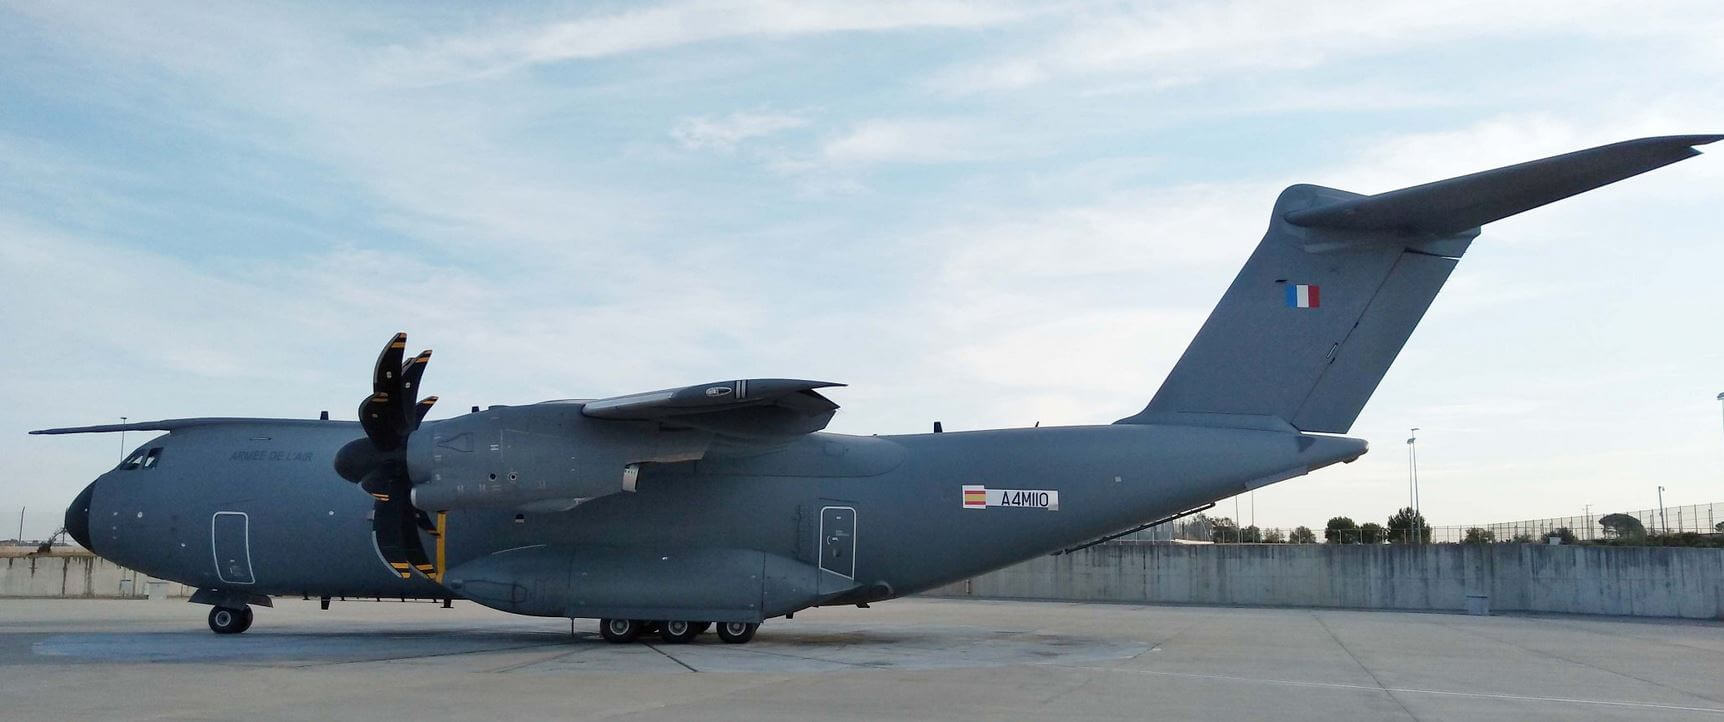 La base aérienne d’Orléans-Bricy recevra demain le 18e A400M avec de nouvelles capacités opérationnelles